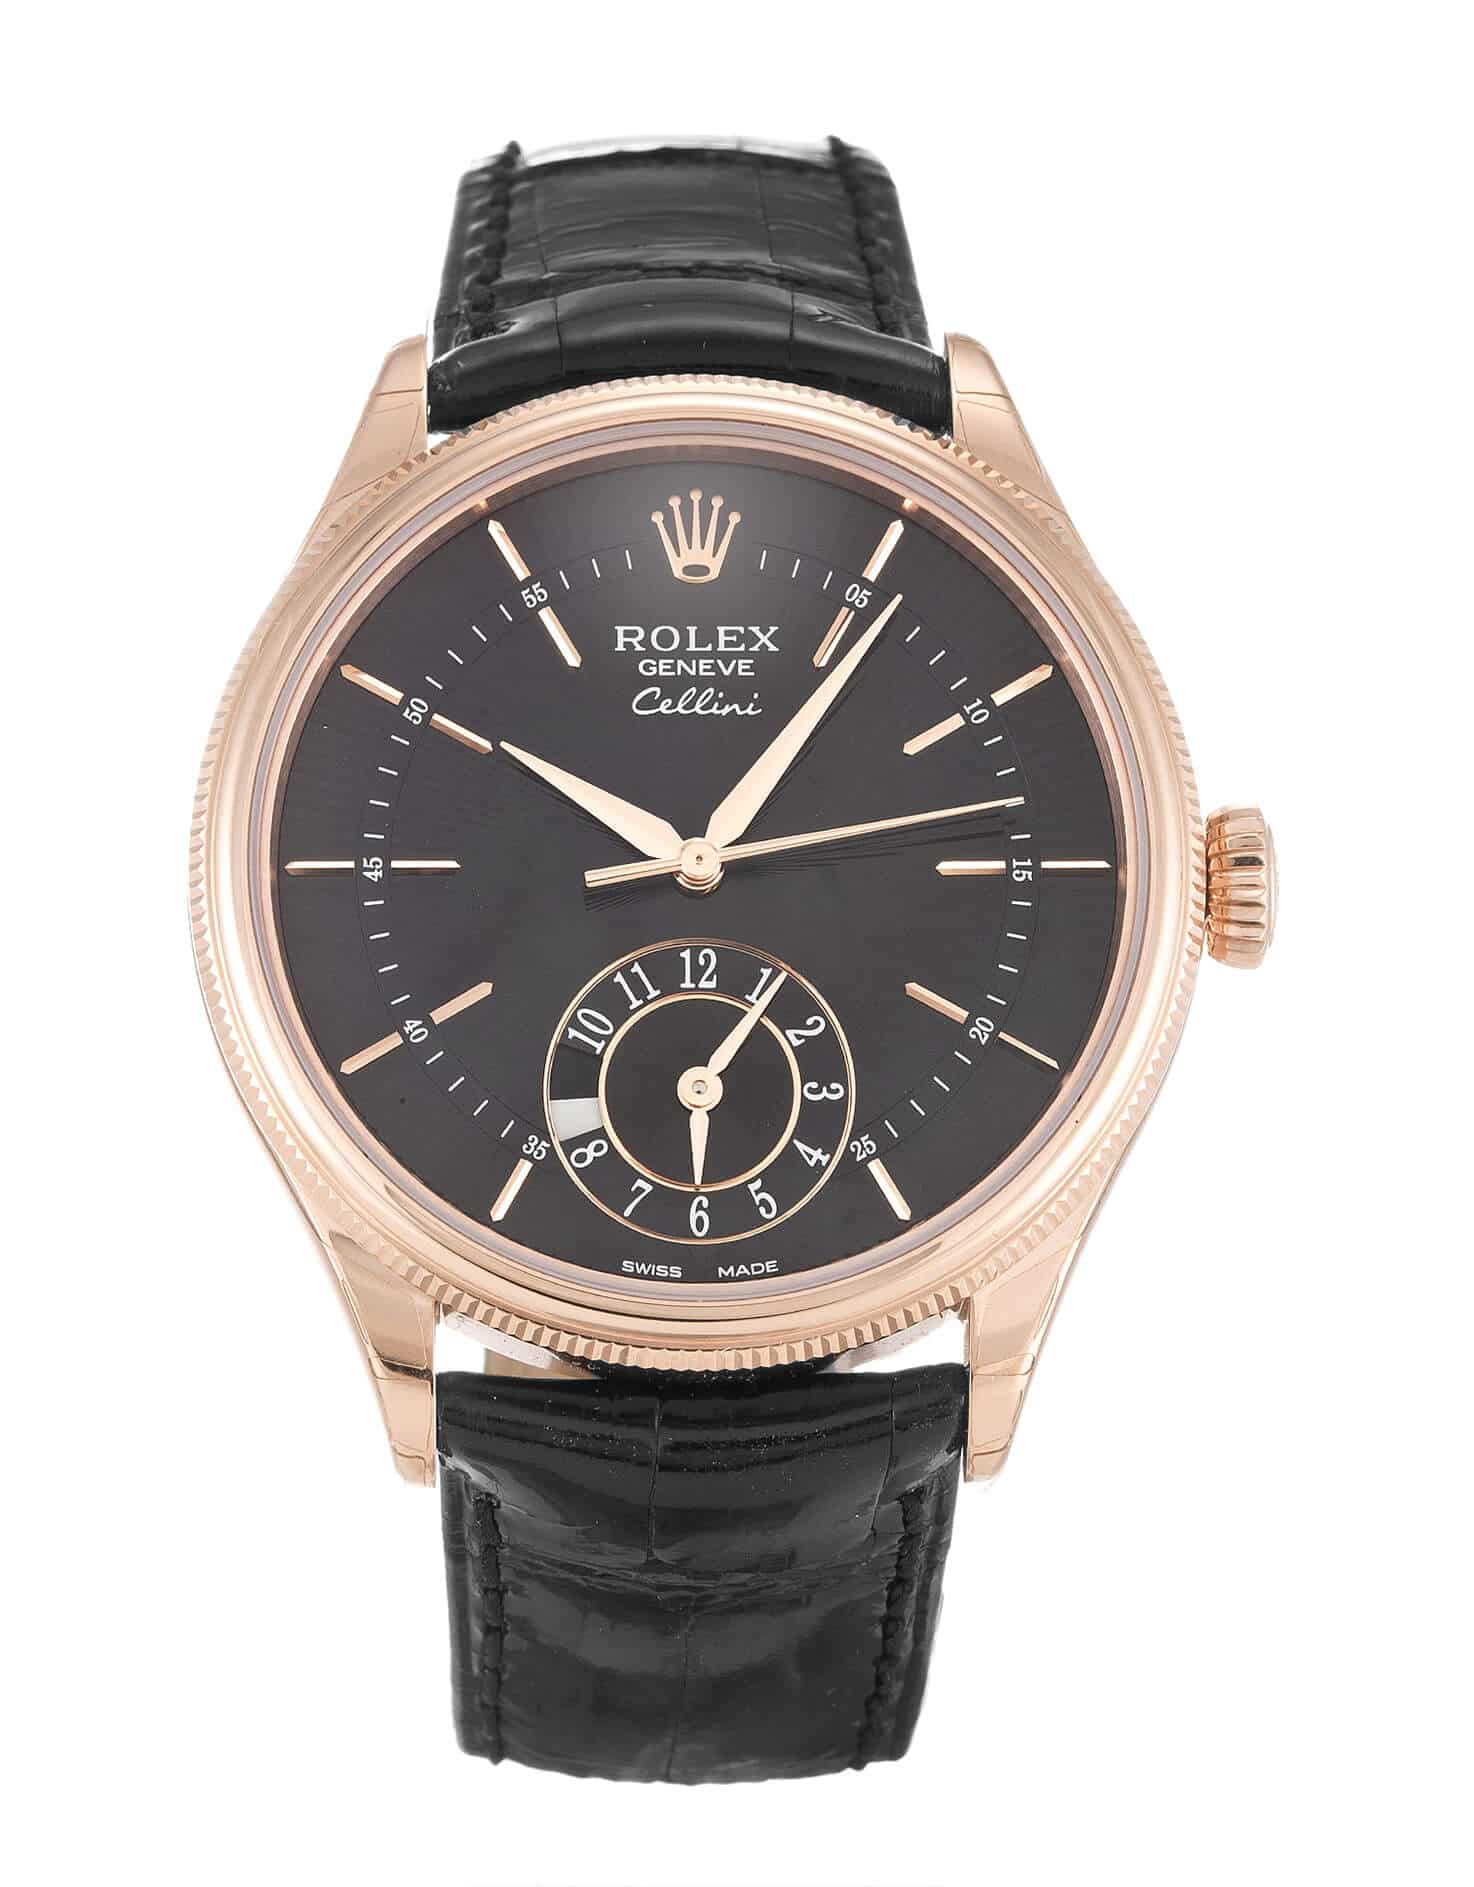 Replica Rolex Cellini Watches